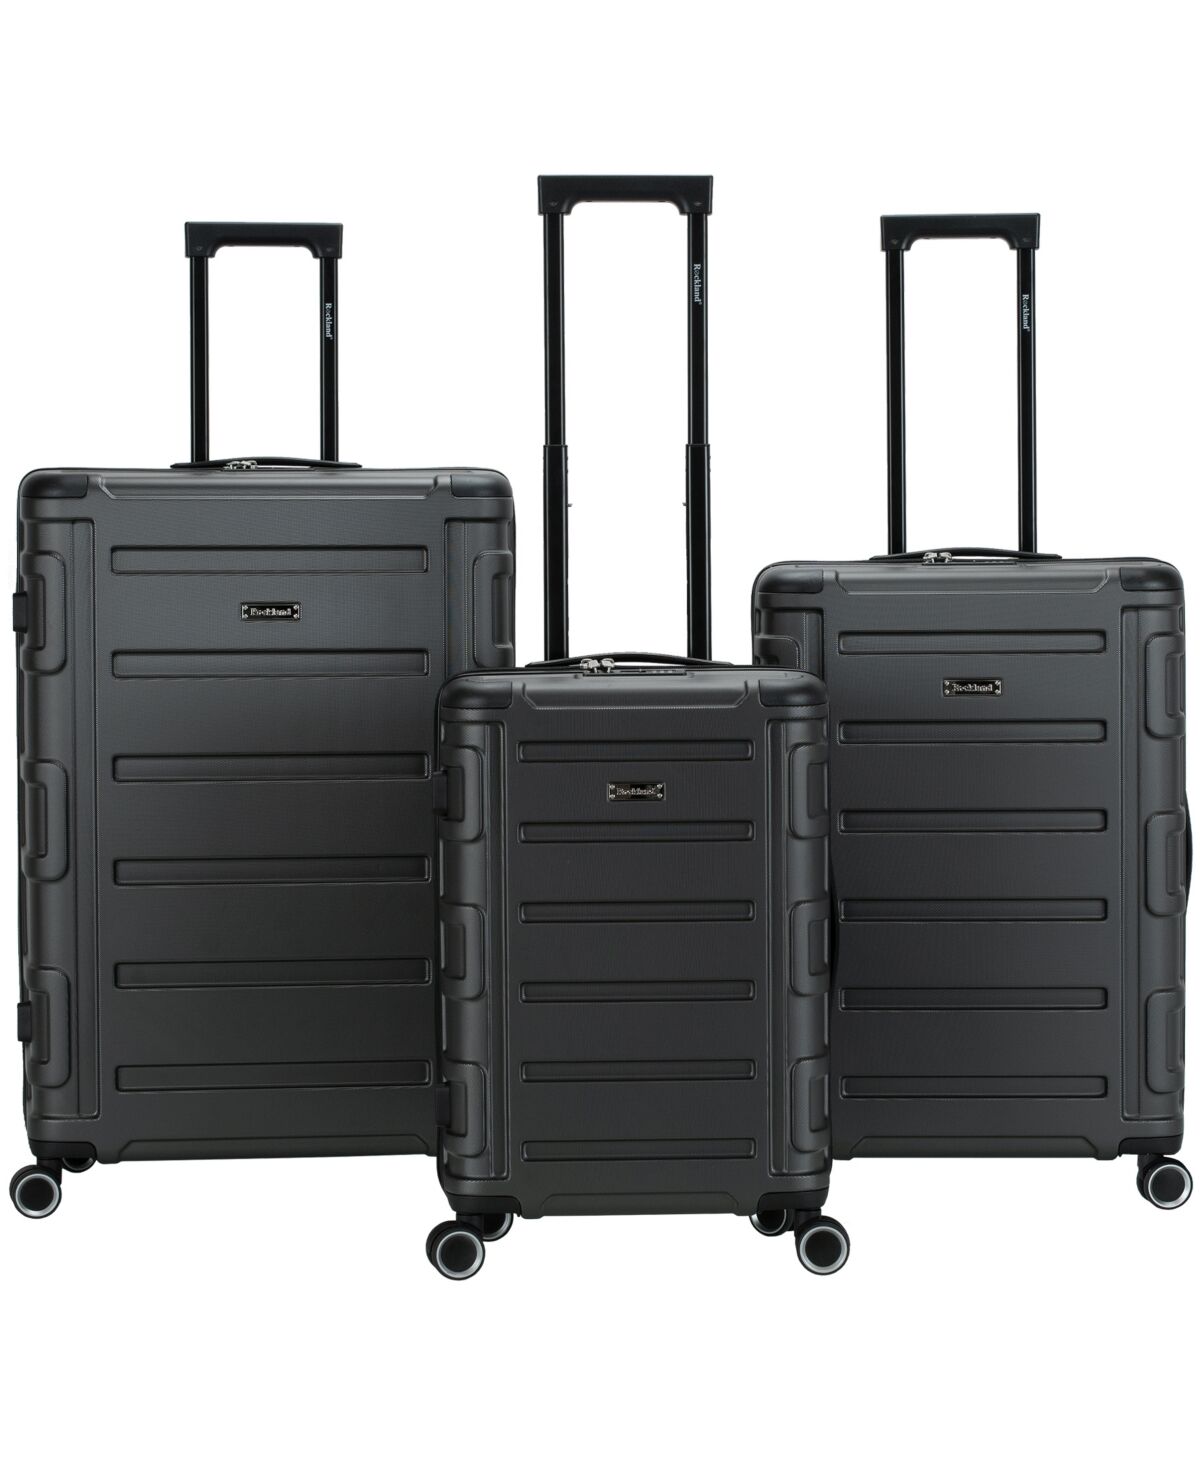 Rockland Boston 3pc Hardside Luggage Set - Grey